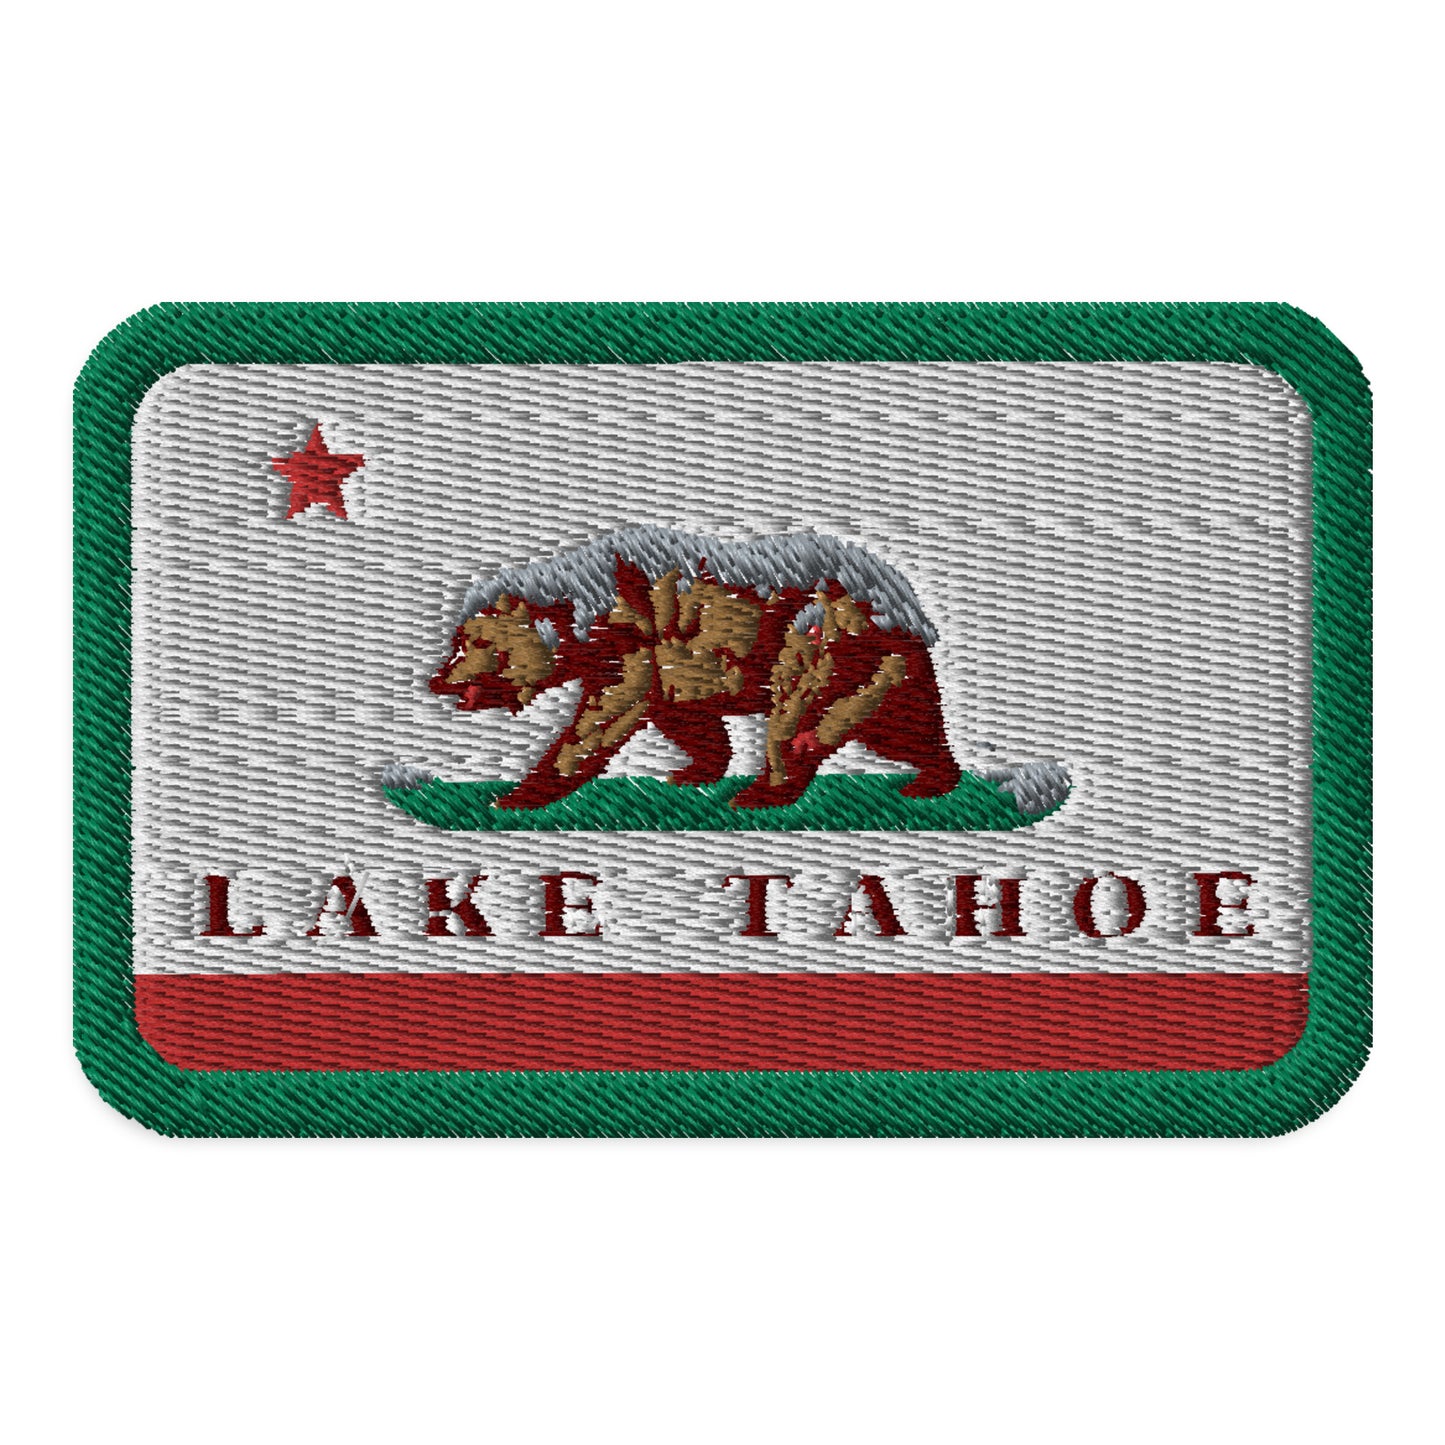 Lake Tahoe Patch